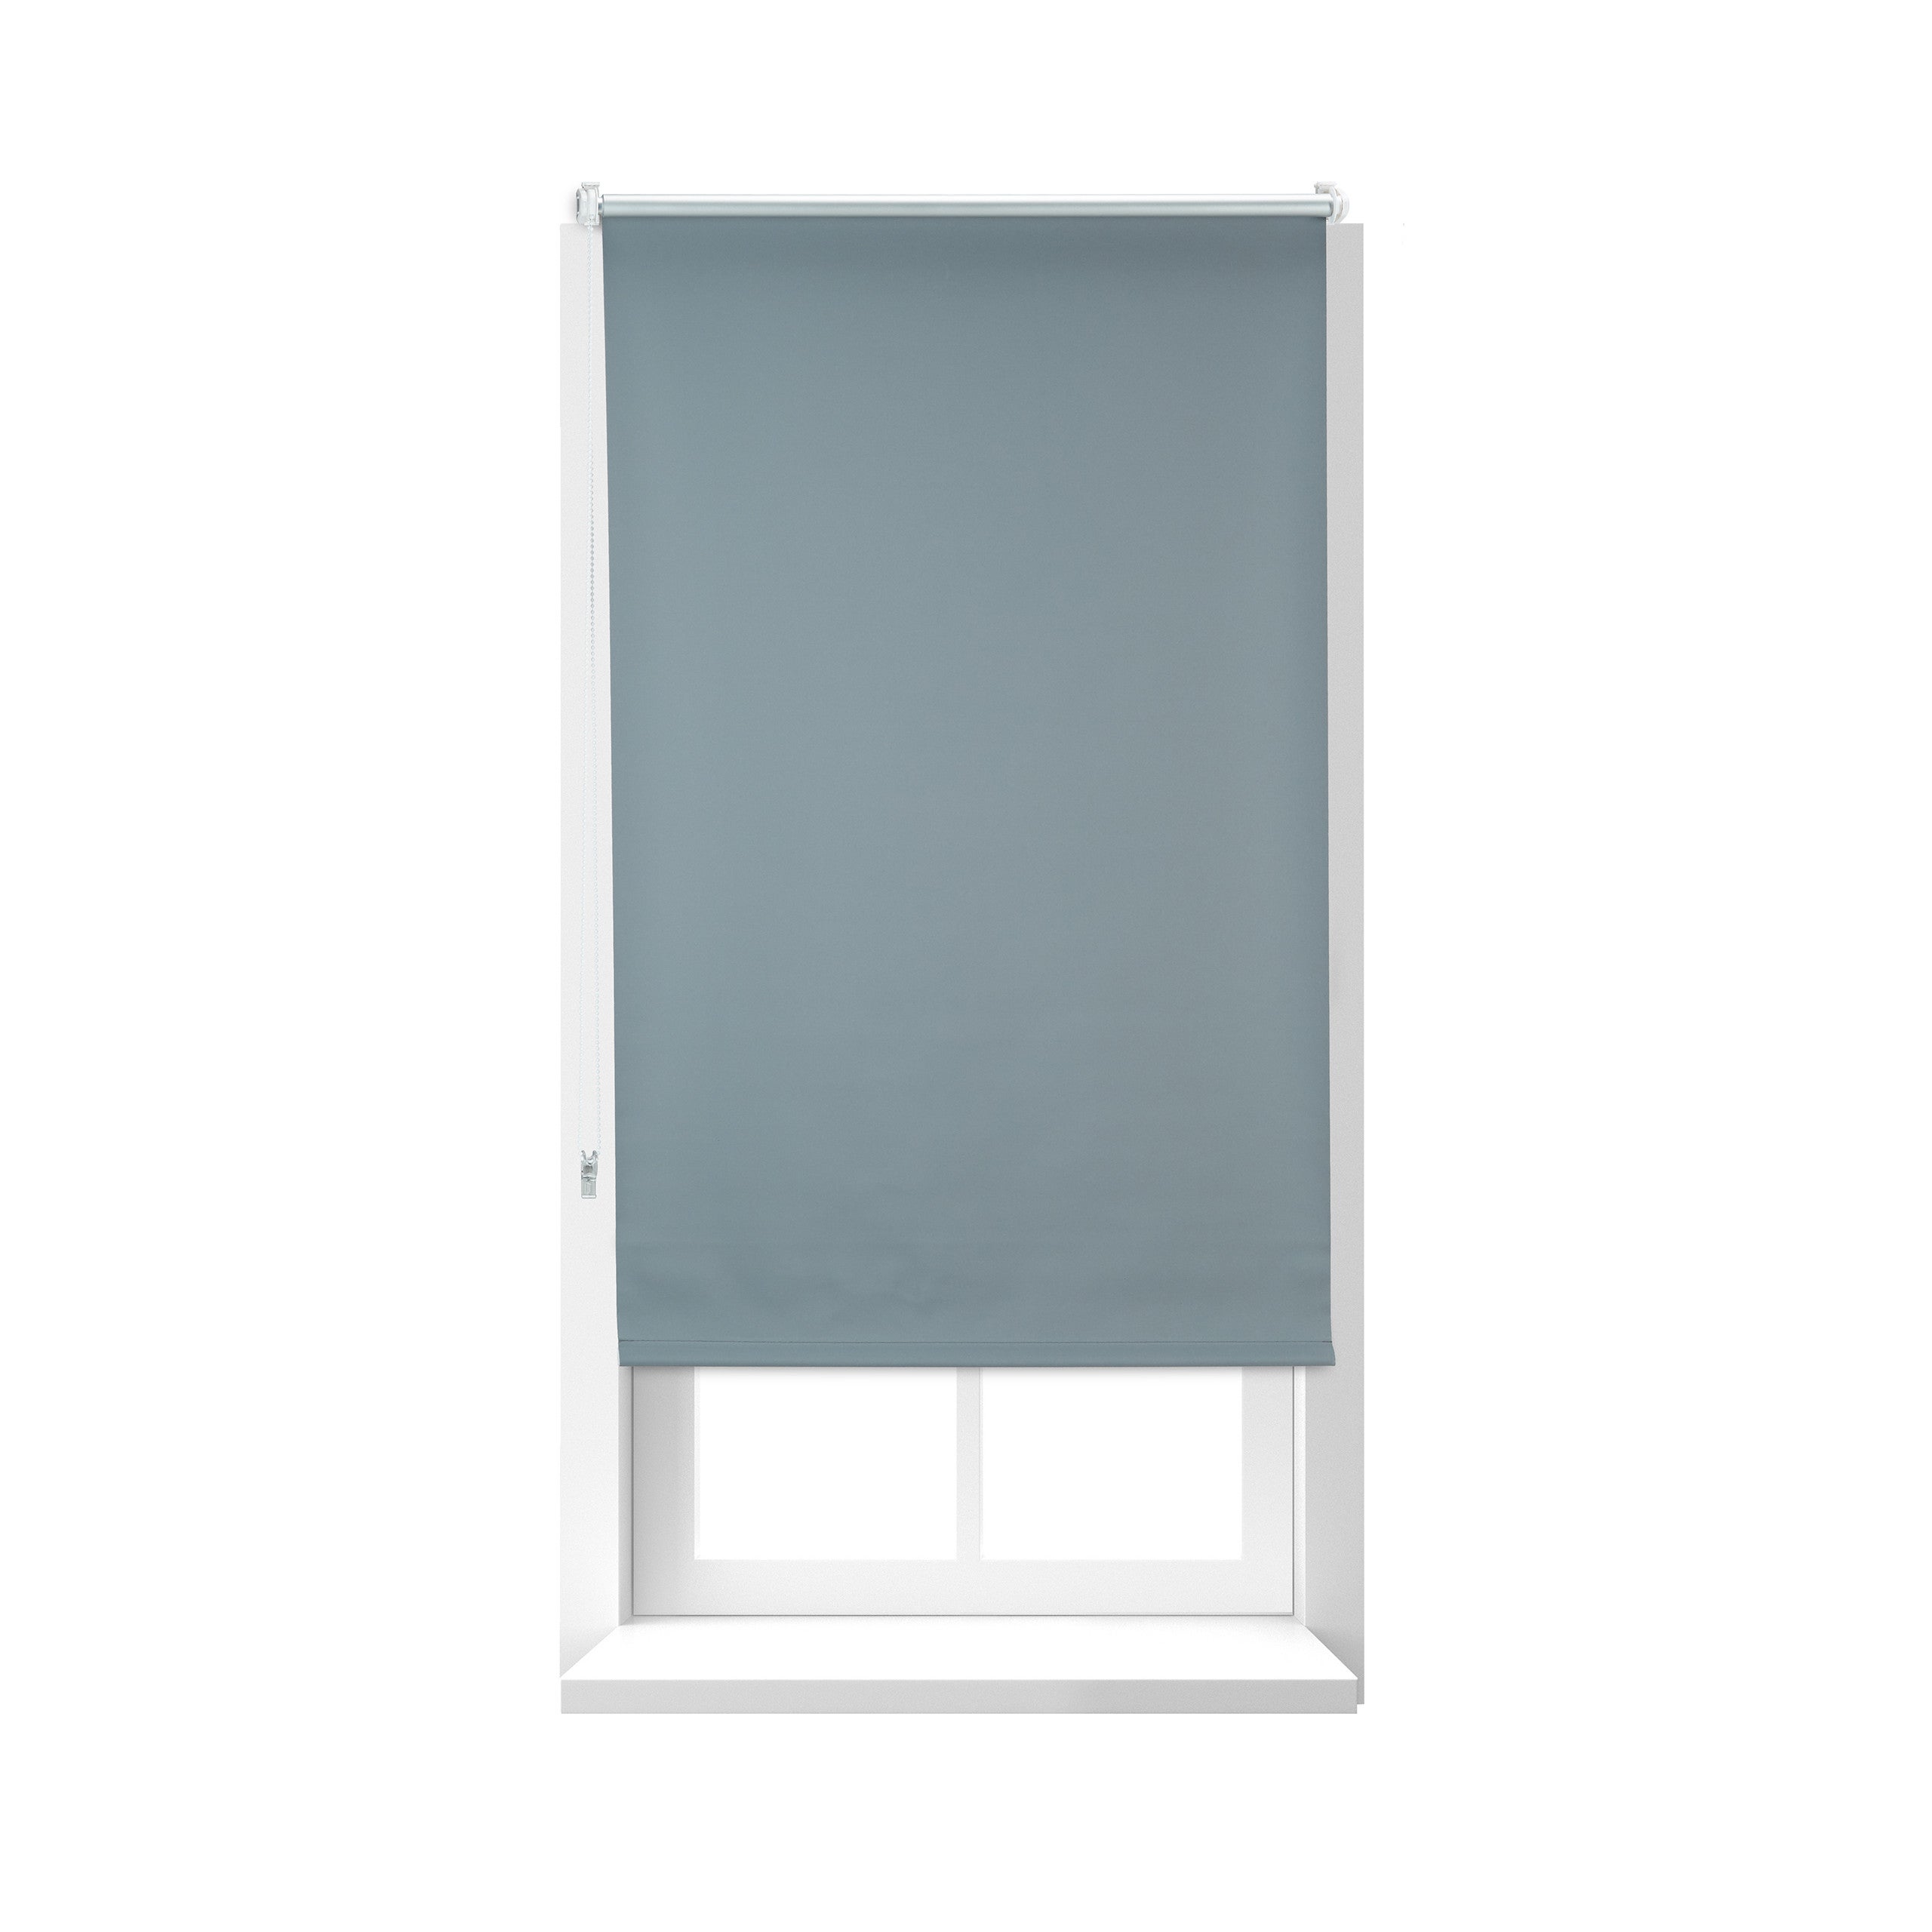 colore bianco larghezza x altezza 35 x 120 cm Tenda plissettata senza fori tenda avvolgibile oscurante per porte e finestre oscurante oscurante 